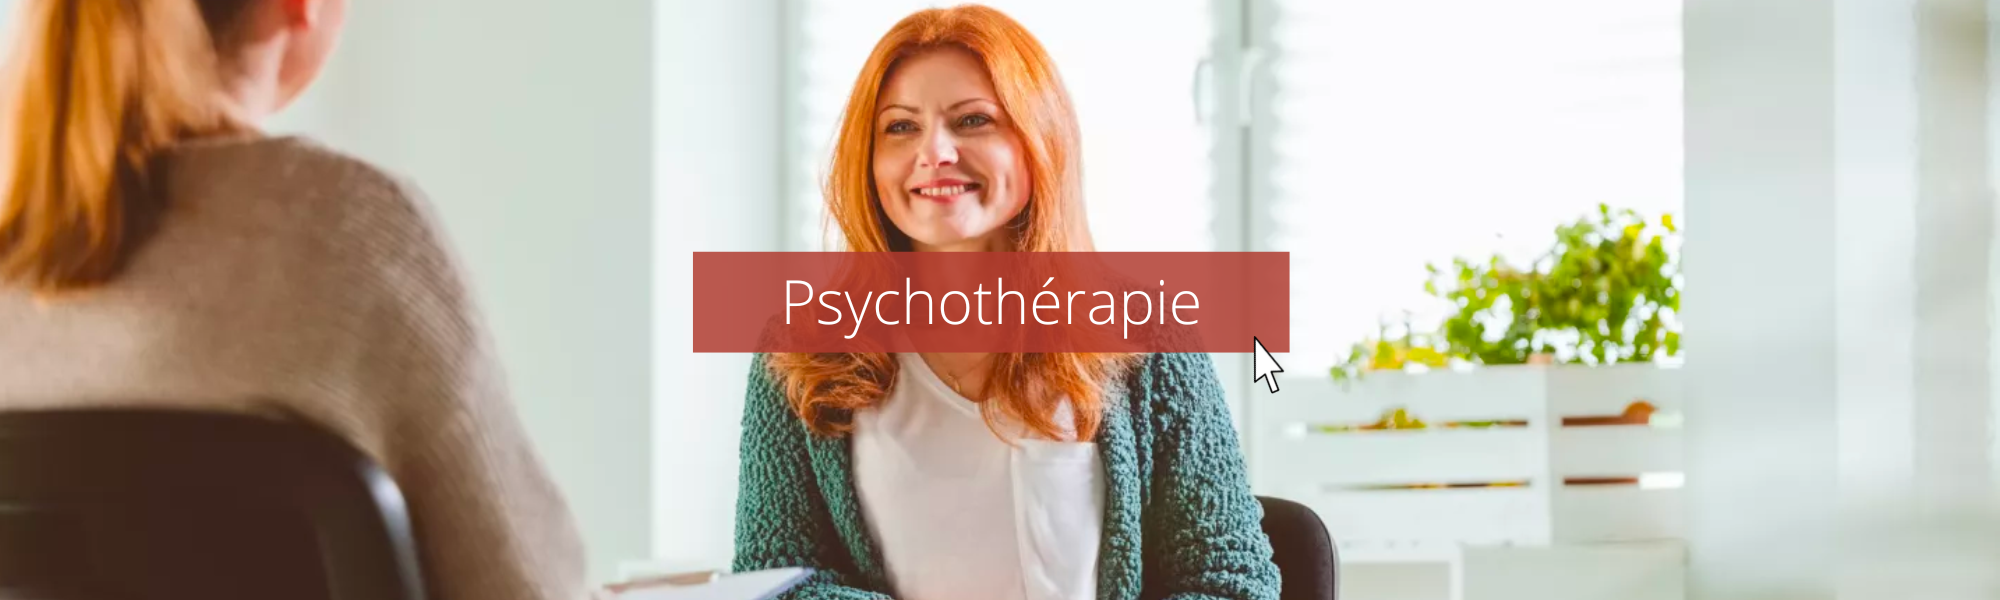 psychothérapie blog